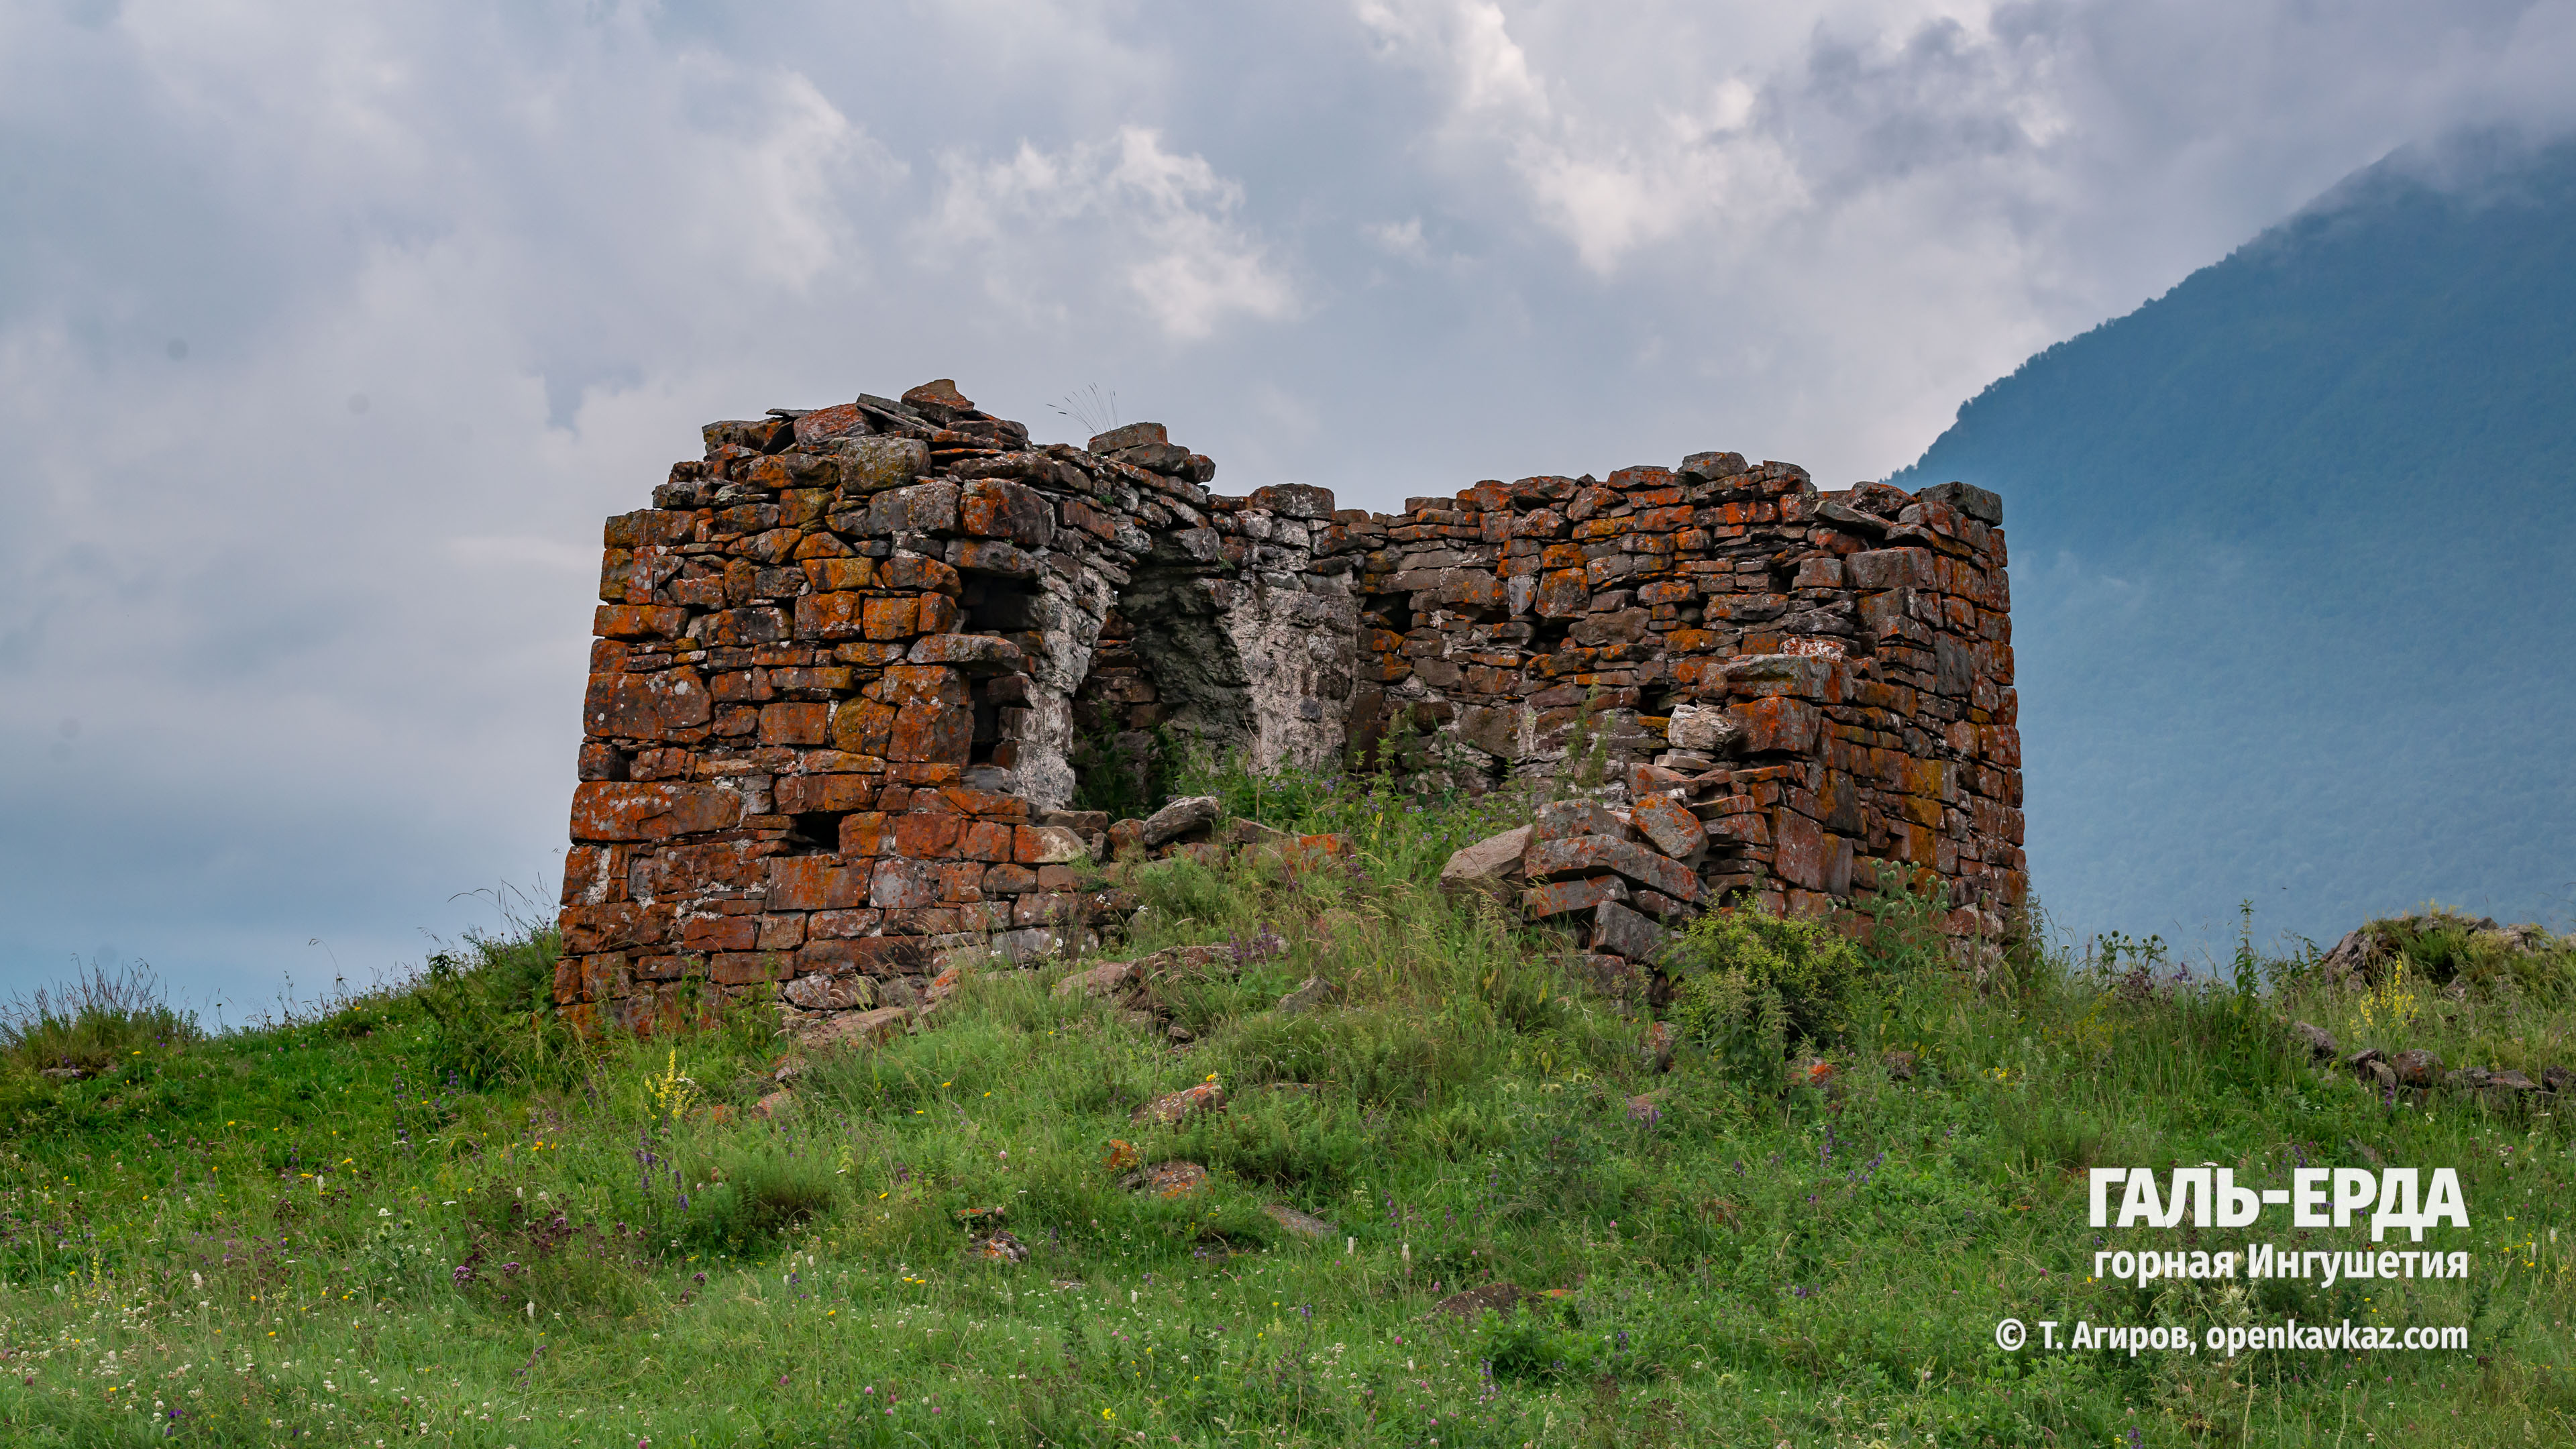 Храм-святилище Галь-Ерда, Ингушетия